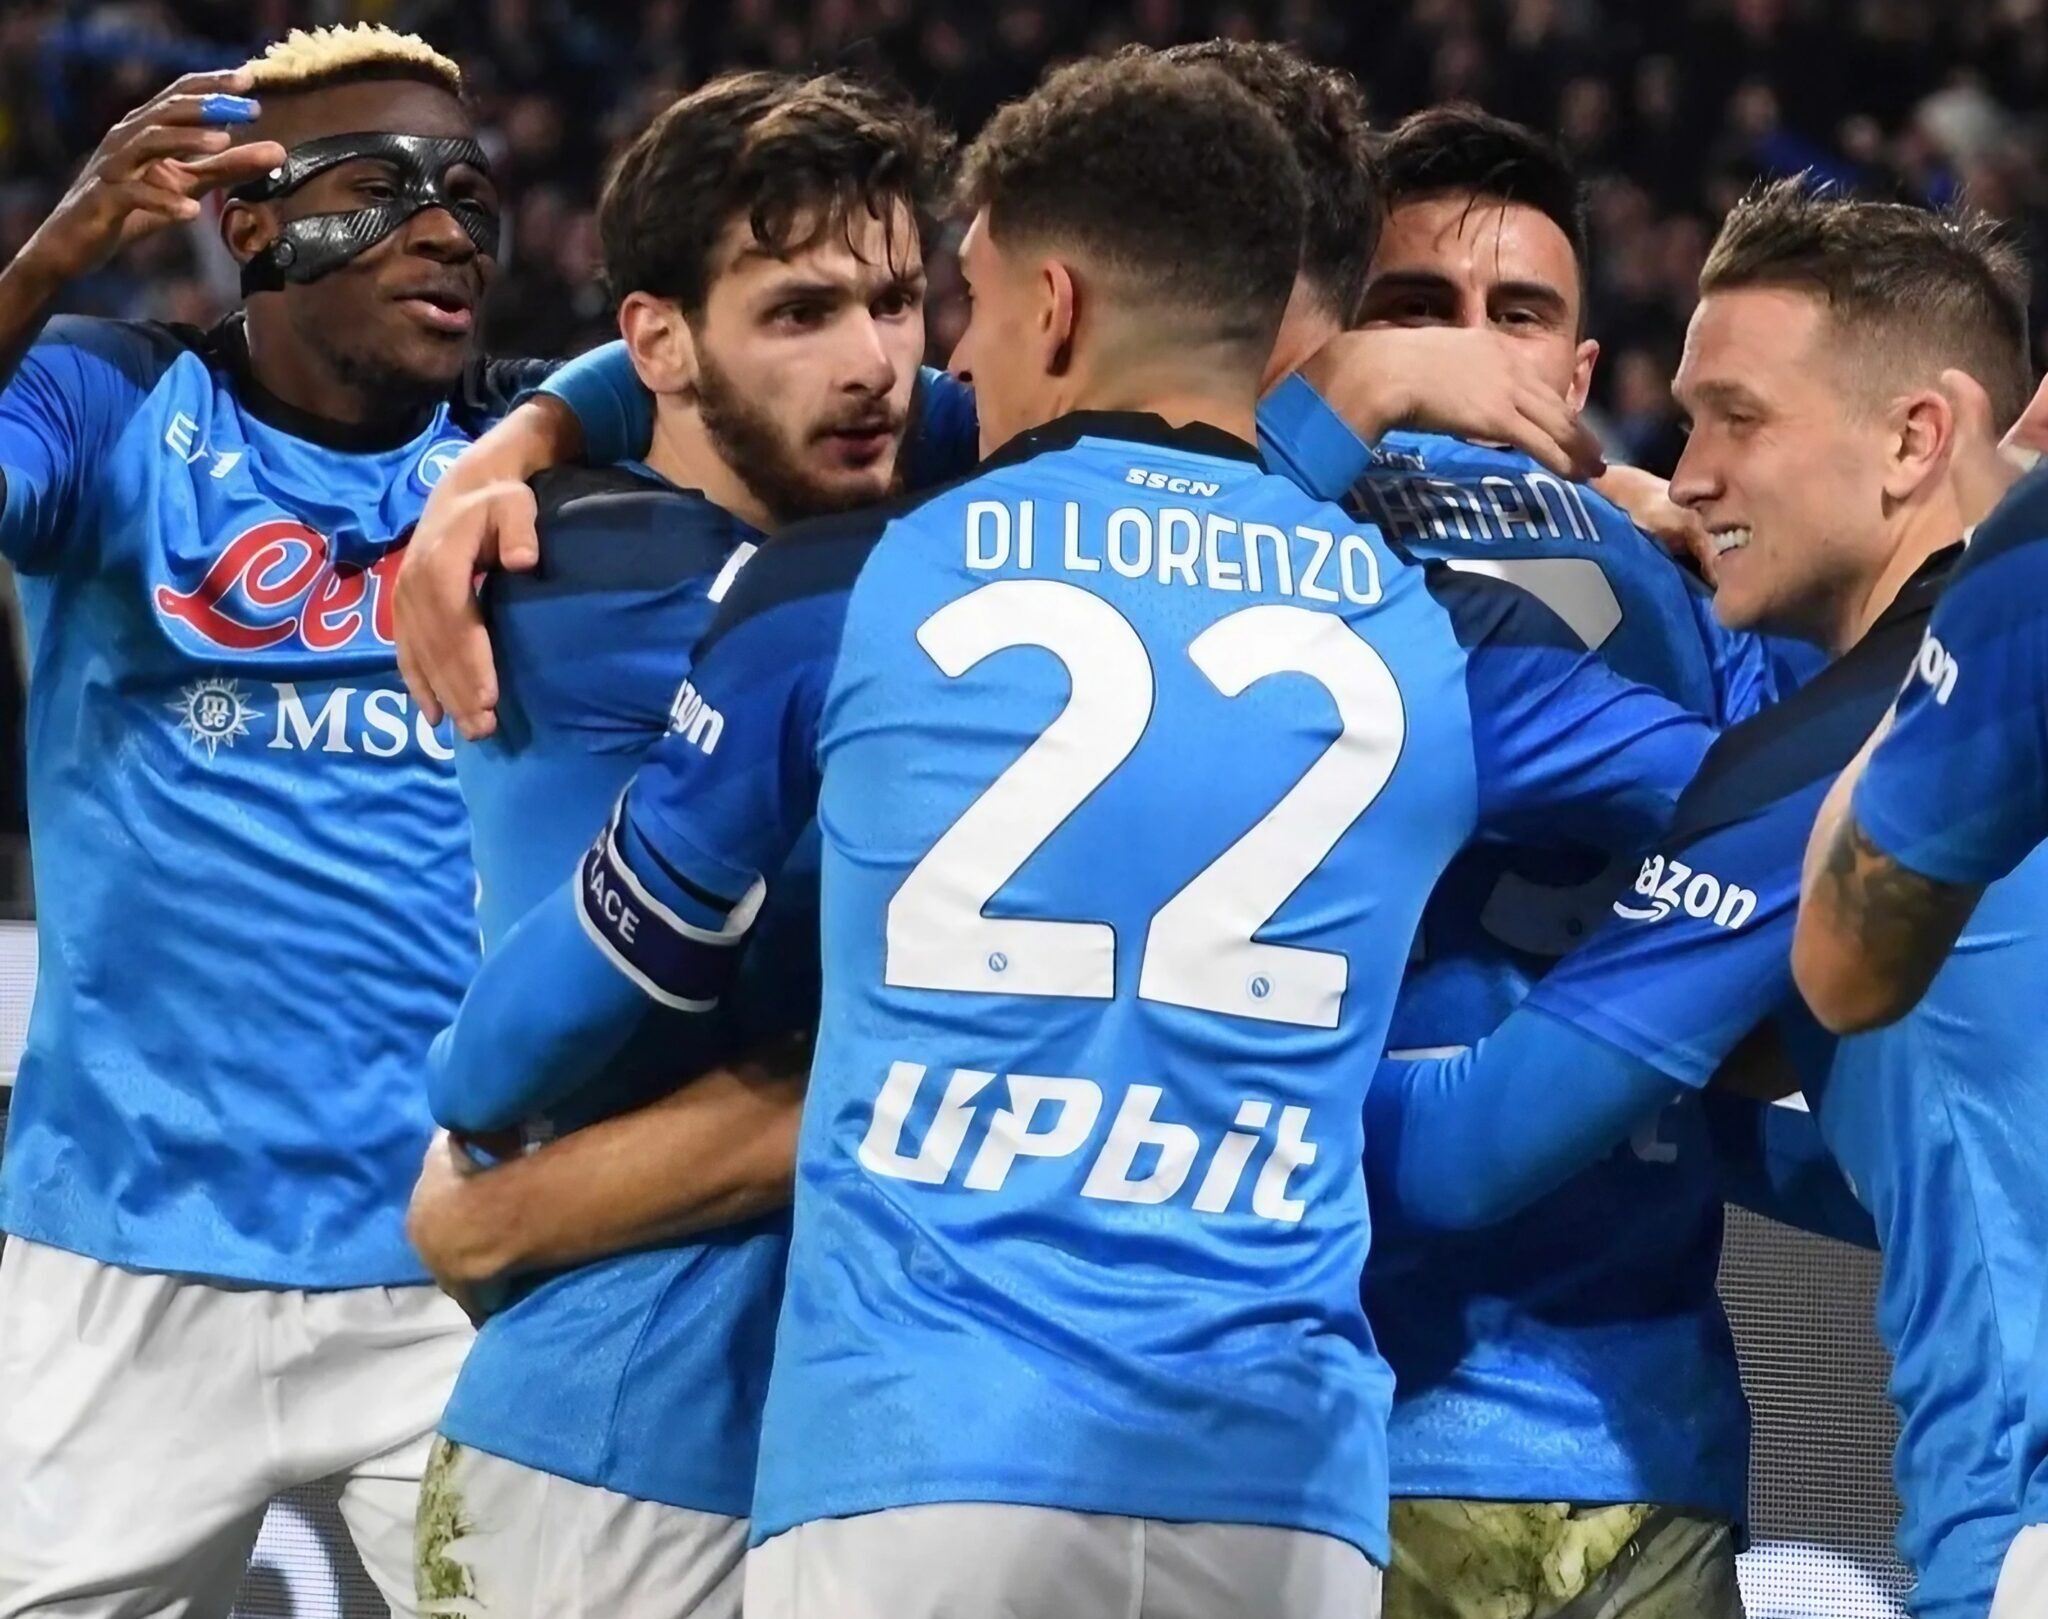 Jugadores del SSC Napoli animando tras un gol